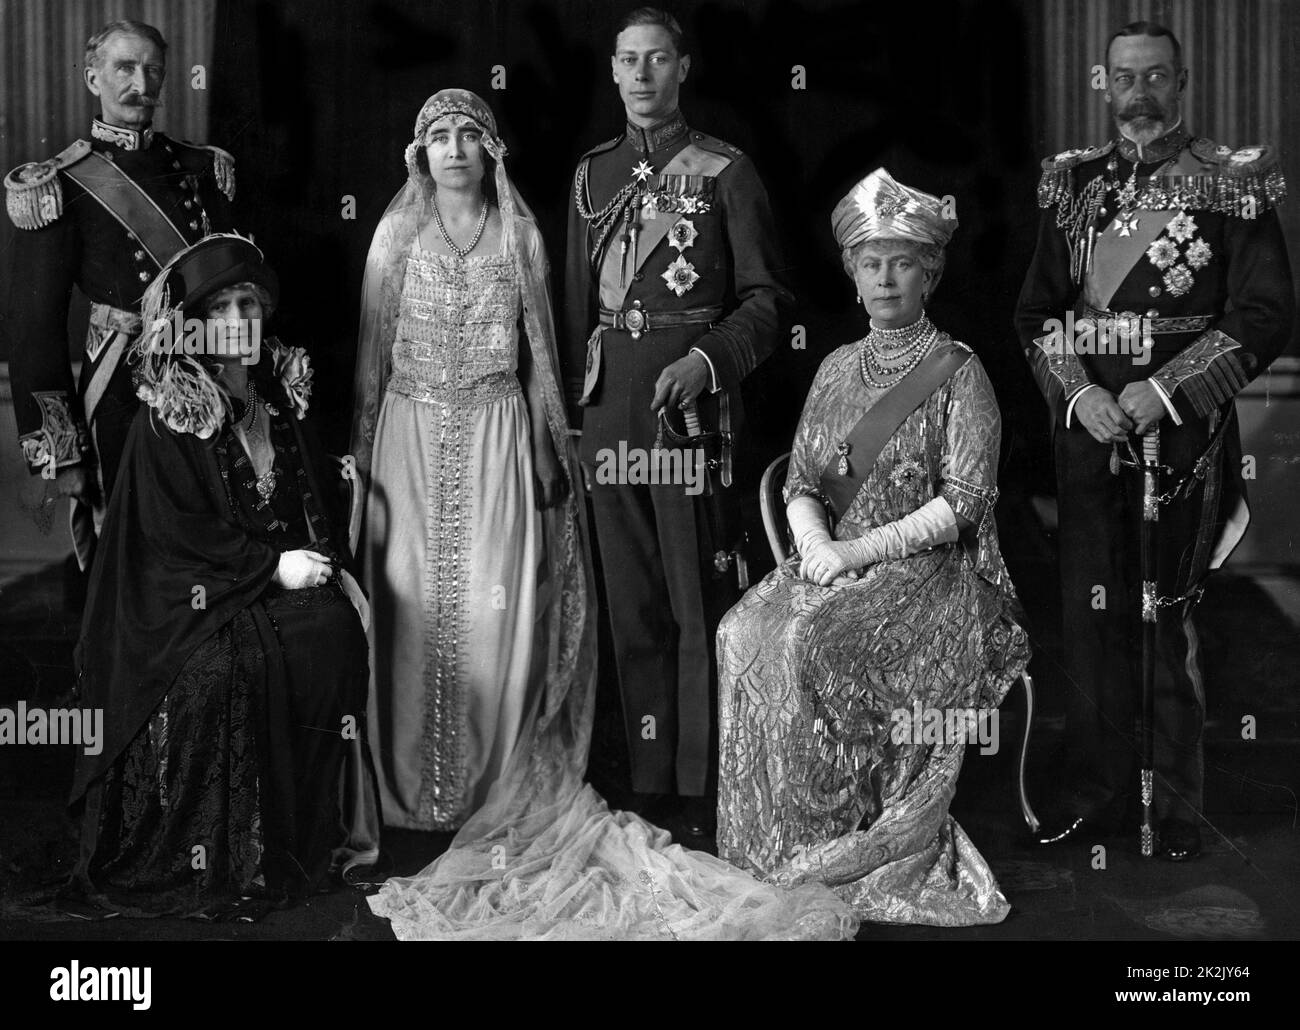 Portrait de mariage du duc et de la Duchesse de York, avec leurs parents, le comte et la comtesse de Strathmore, ainsi que la reine Marie et le roi George V d'Angleterre. (Le duc et la duchesse étaient de devenir le roi George VI d'Angleterre et de la Reine Elizabeth) Photographie prise en avril 1923. Banque D'Images